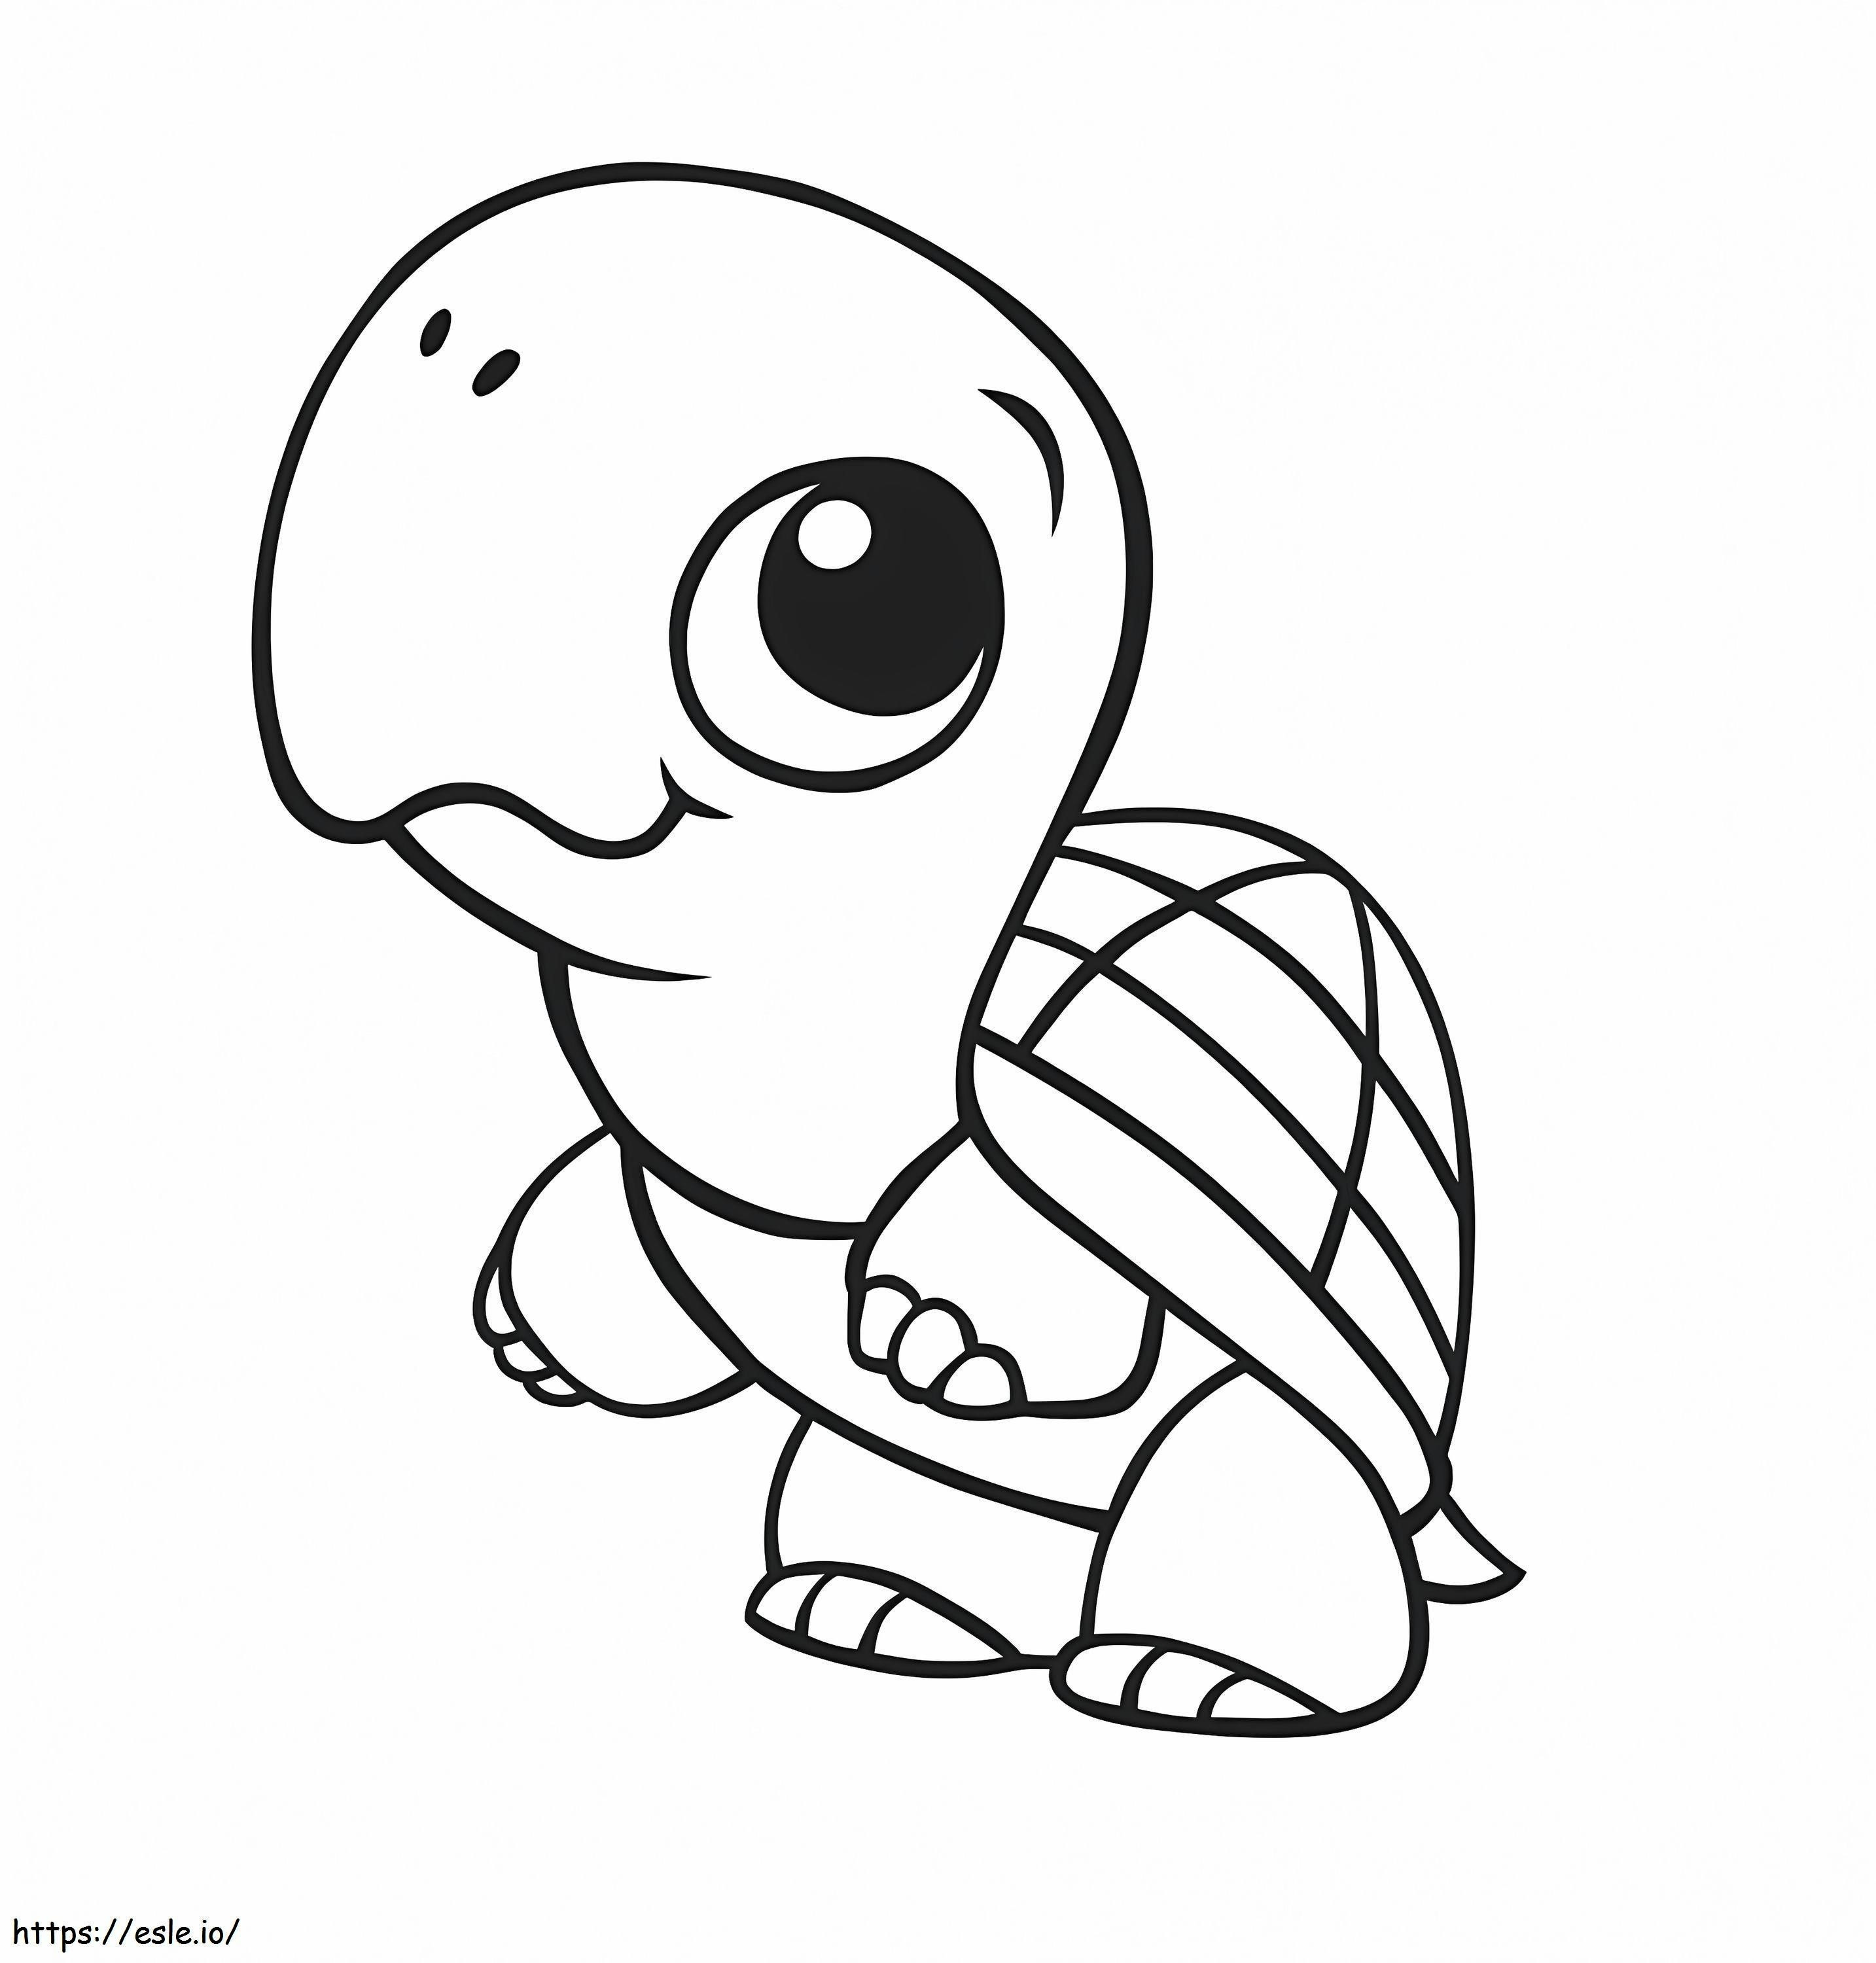 Baby-Schildkröte ausmalbilder